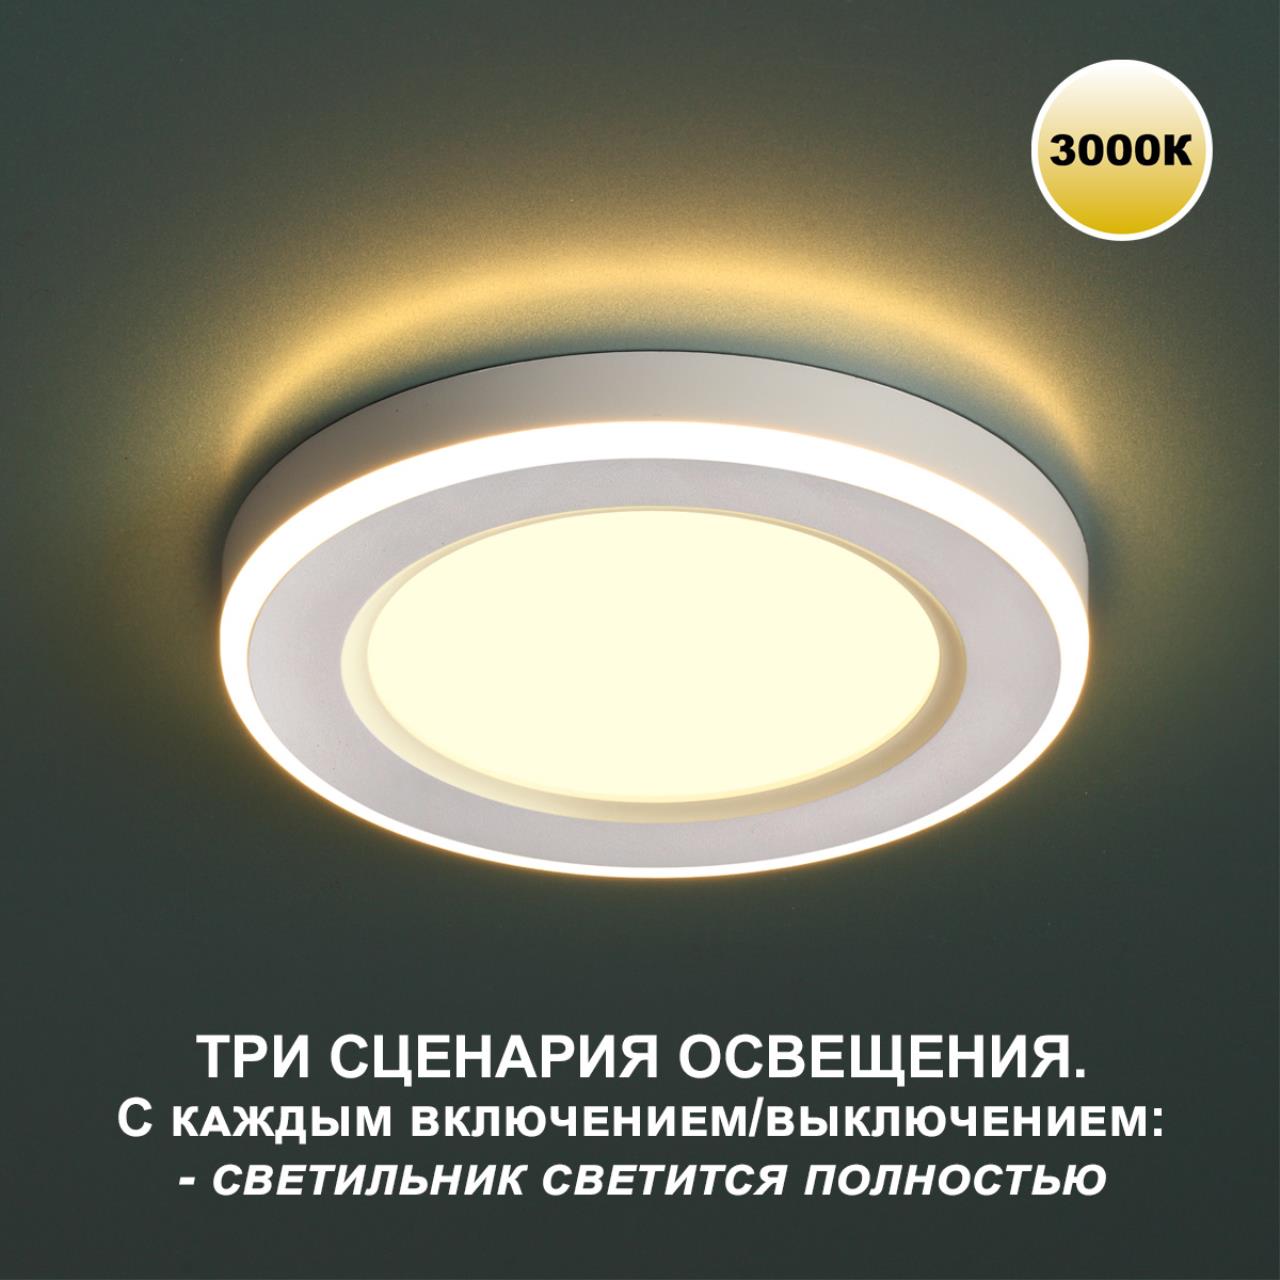 Трёхрежимный встраиваемый светодиодный светильник Novotech SPAN 359022